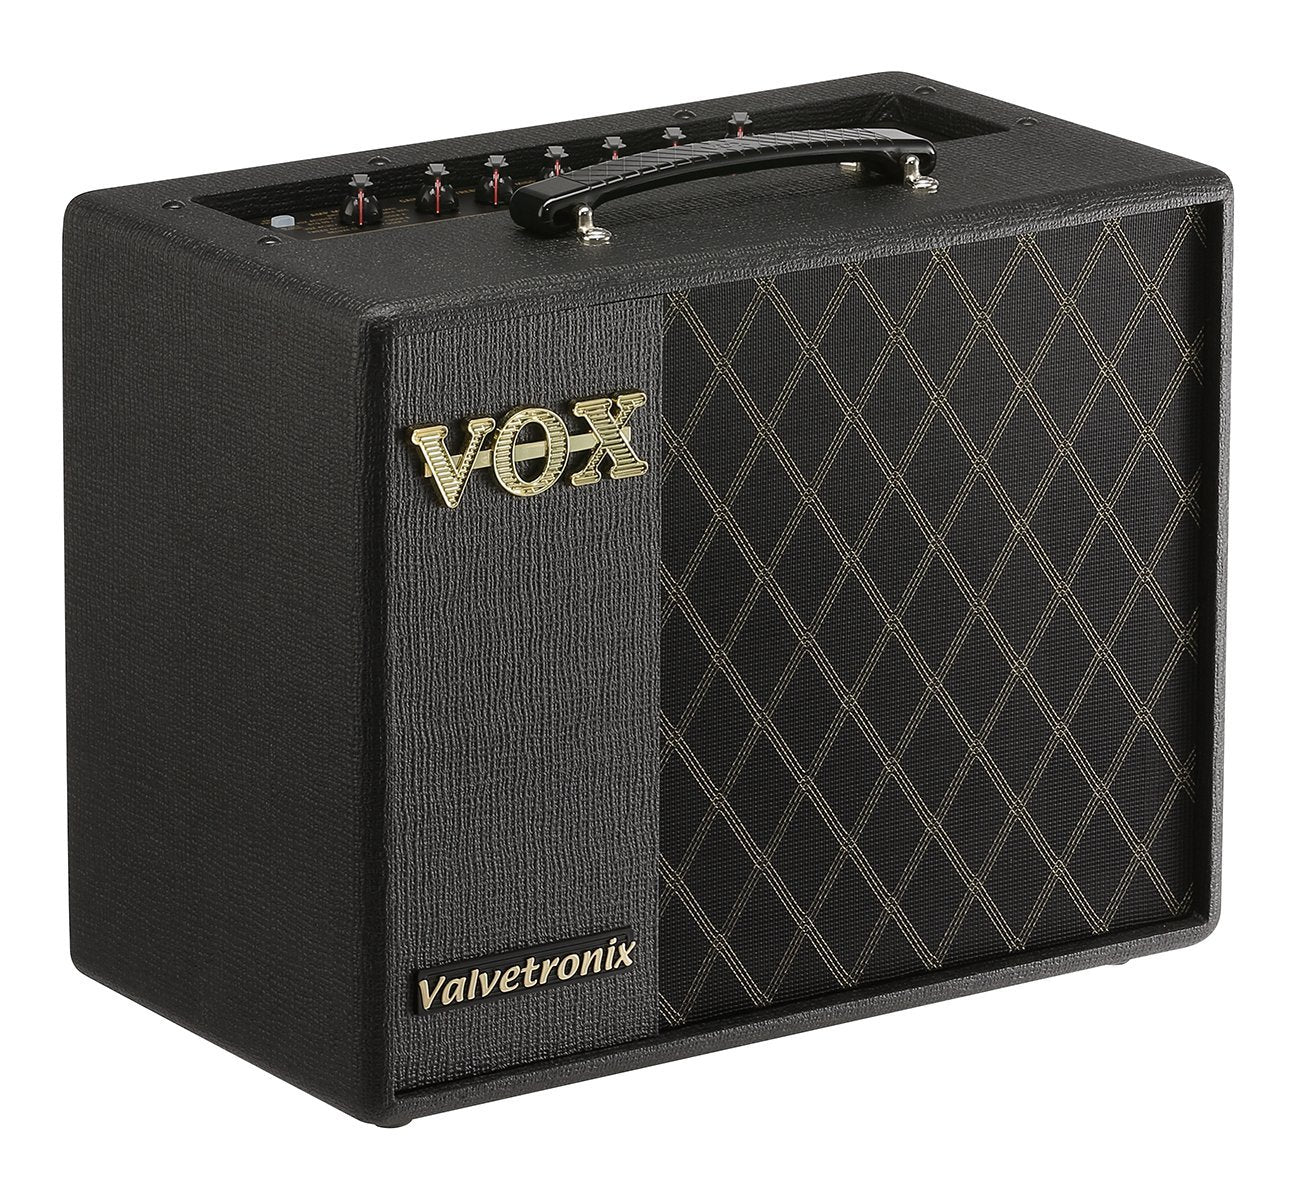 Vox VT20X 20-Watt 1x8 Guitar Modeling Combo Amp